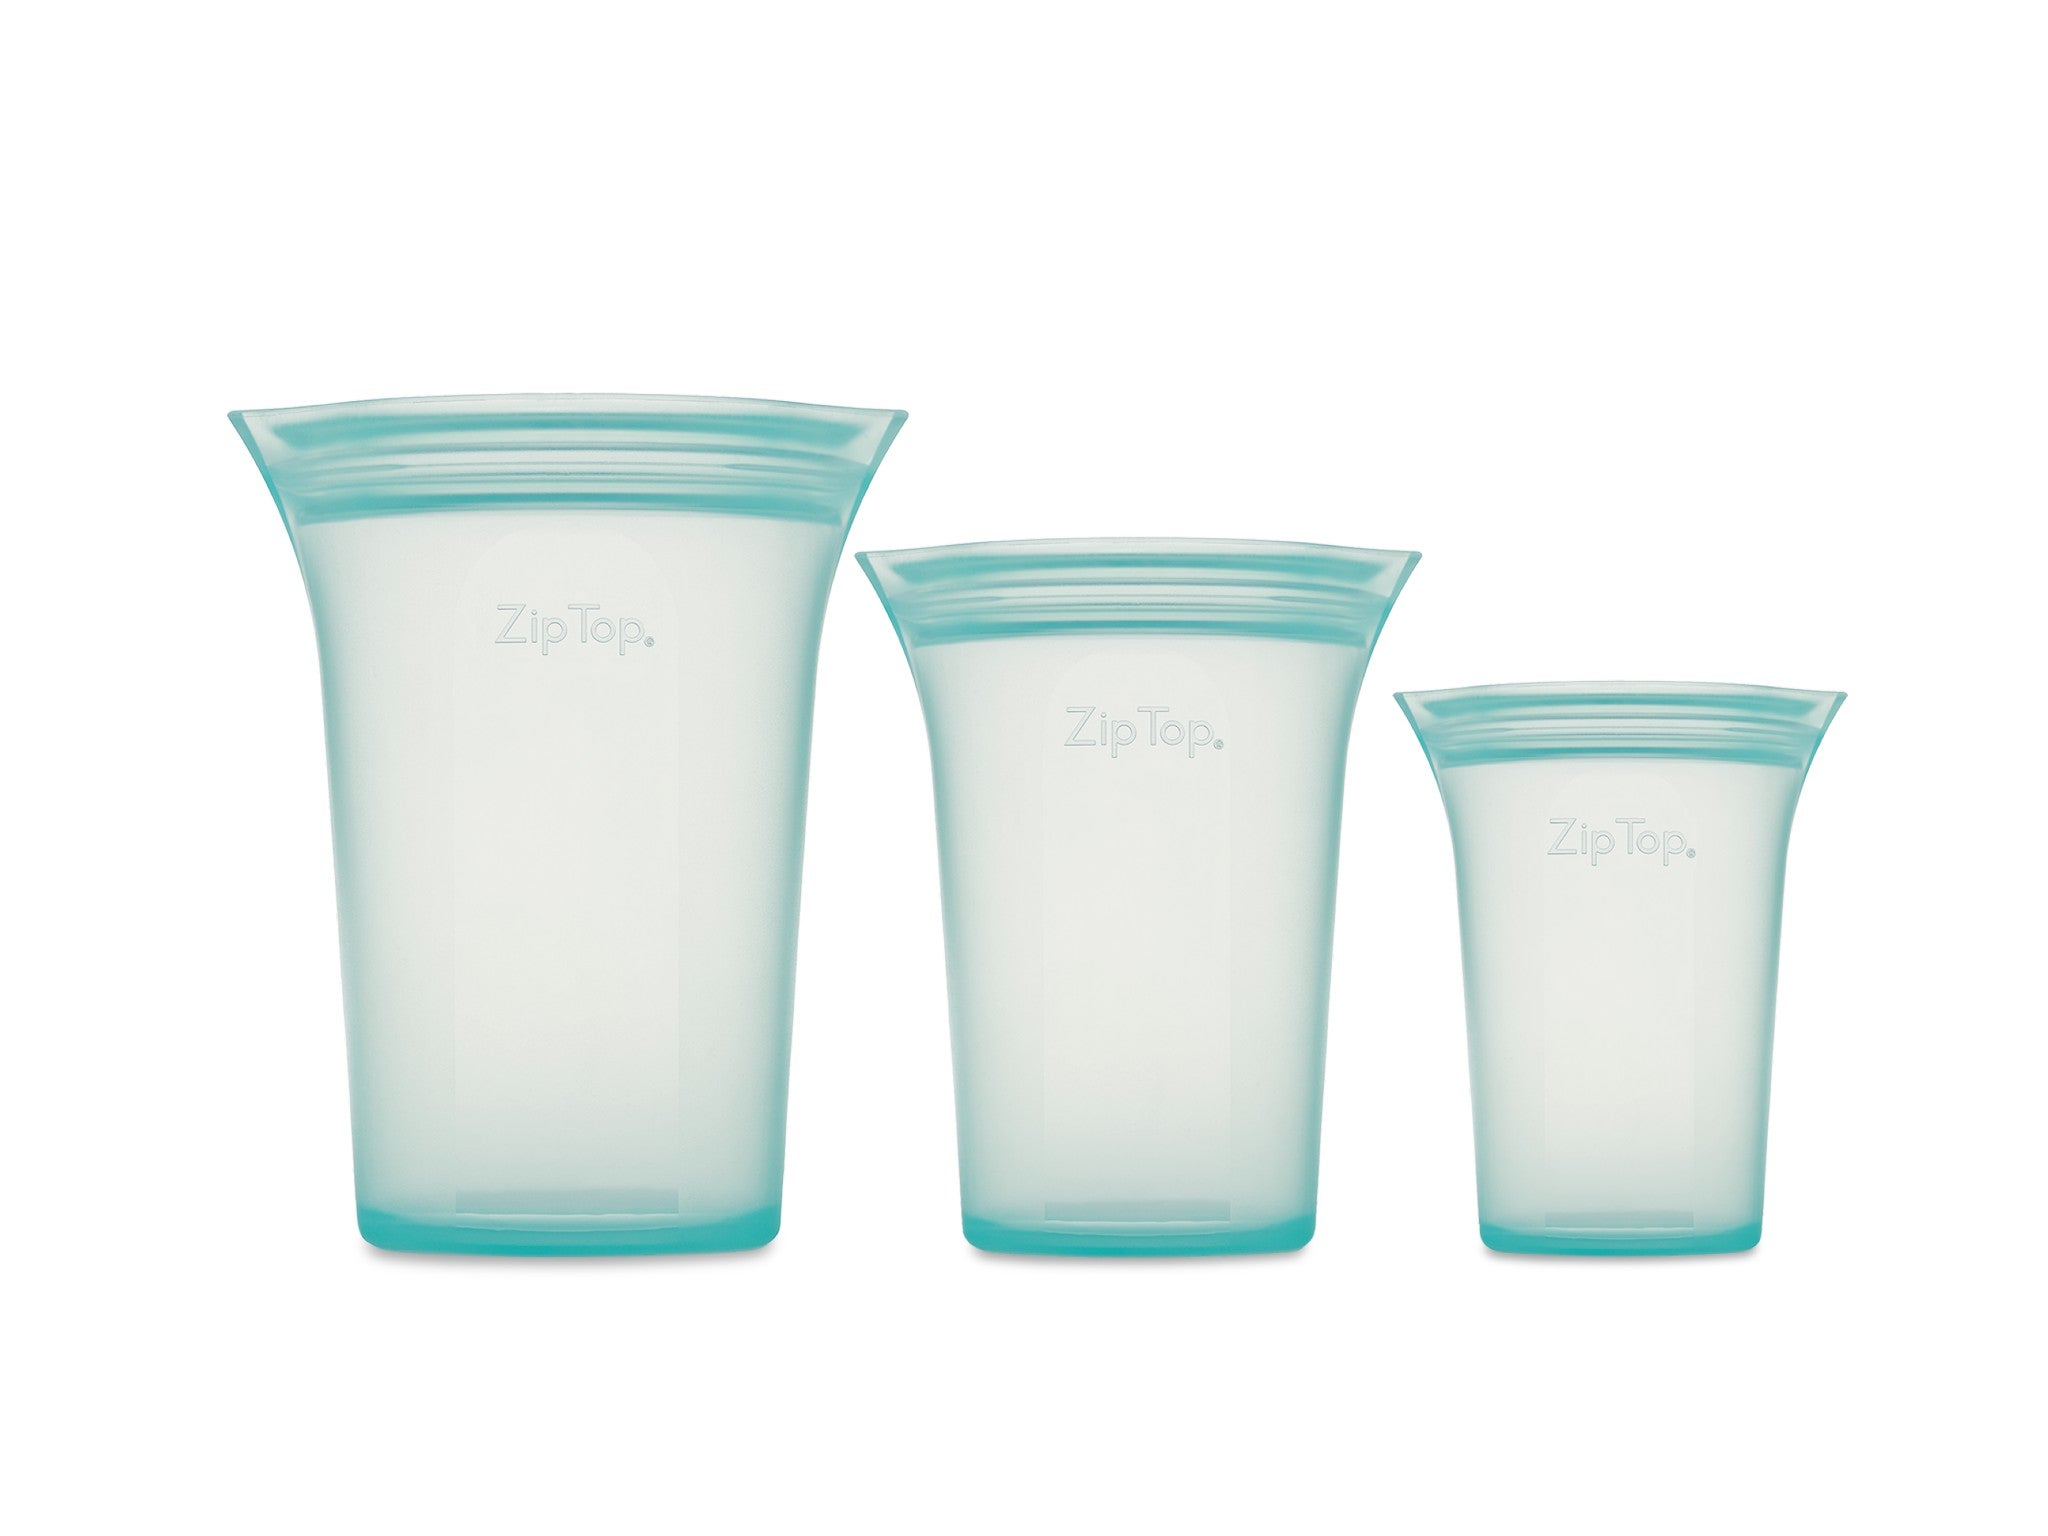 Zip Top reusable silicone cup set  indybest.jpg